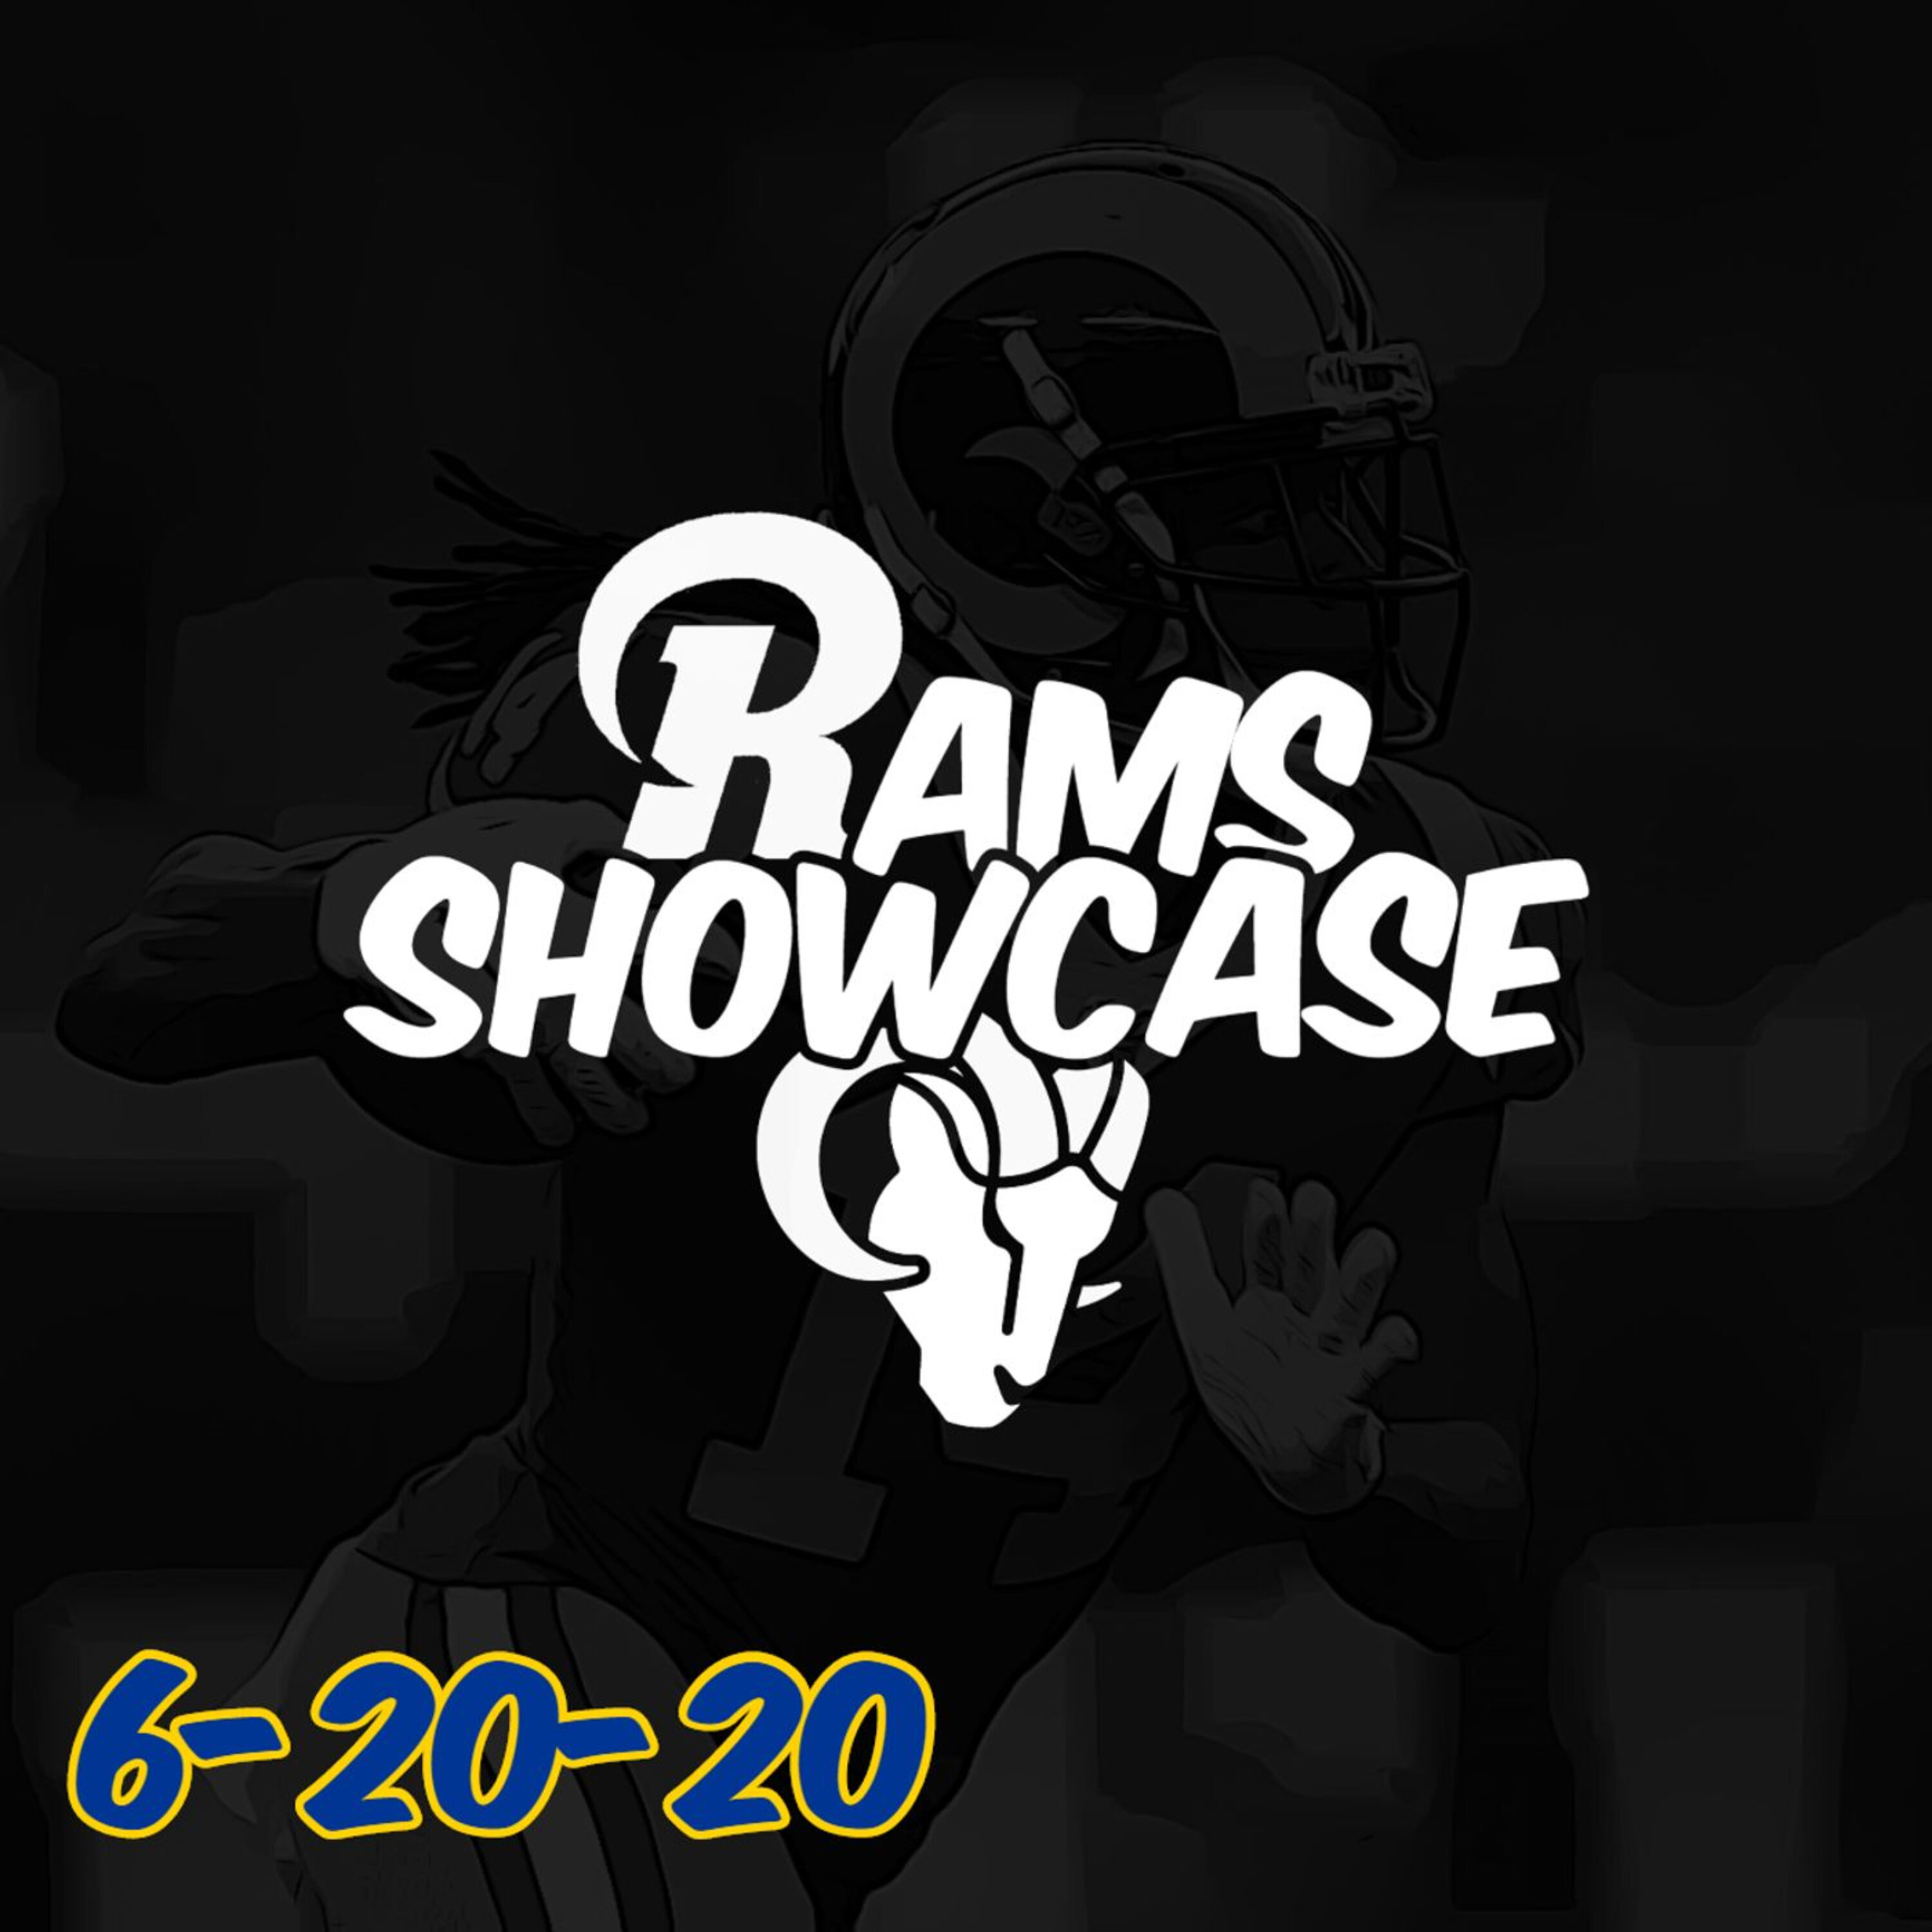 Rams Showcase - Special Teams Shift